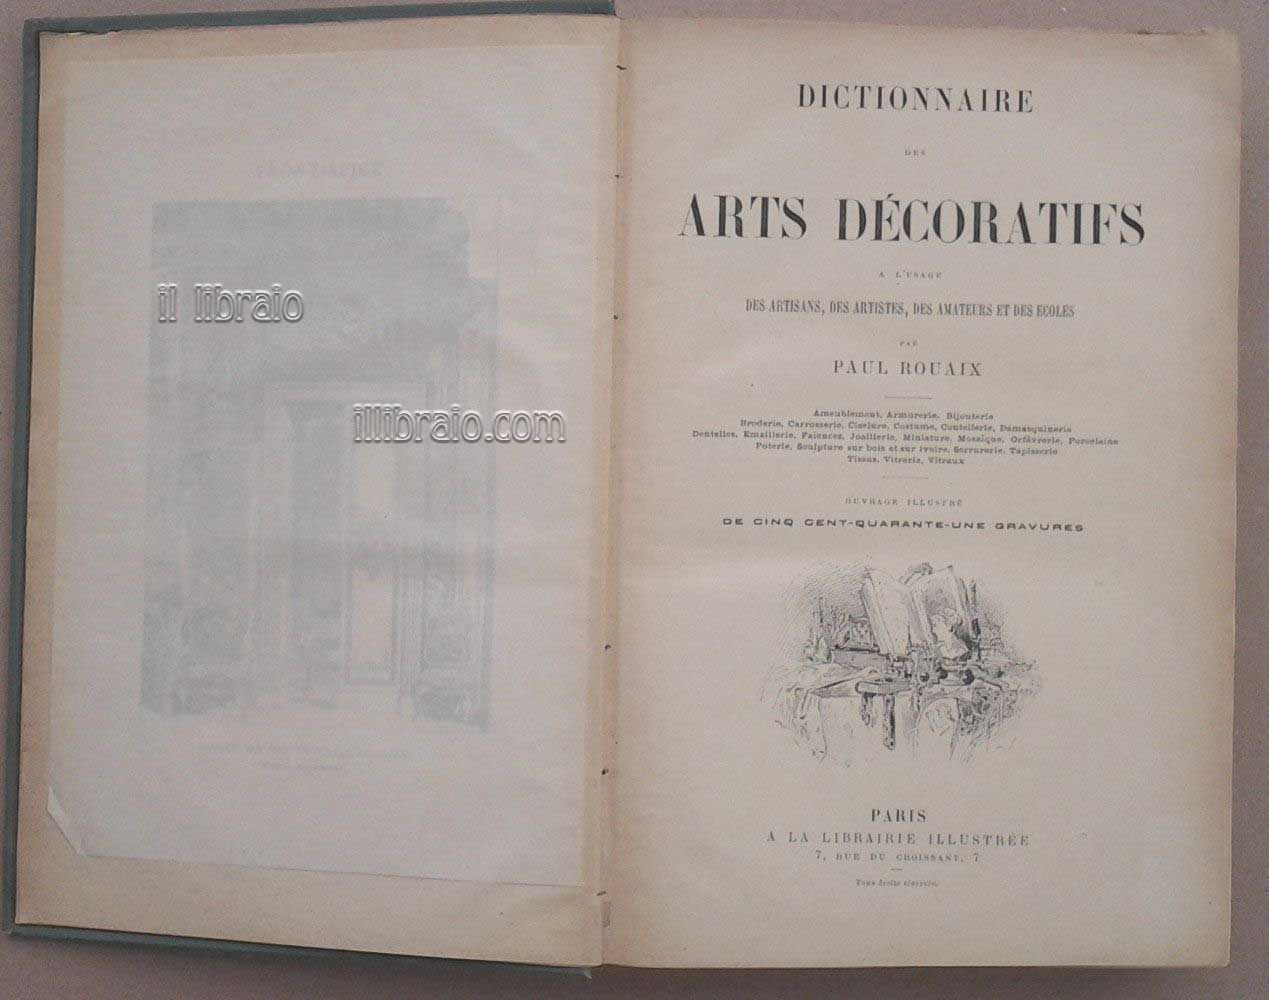 Dictionnaire des Arts decoratifs a l'usage des artisans, des artistes, des amateurs et des ecoles